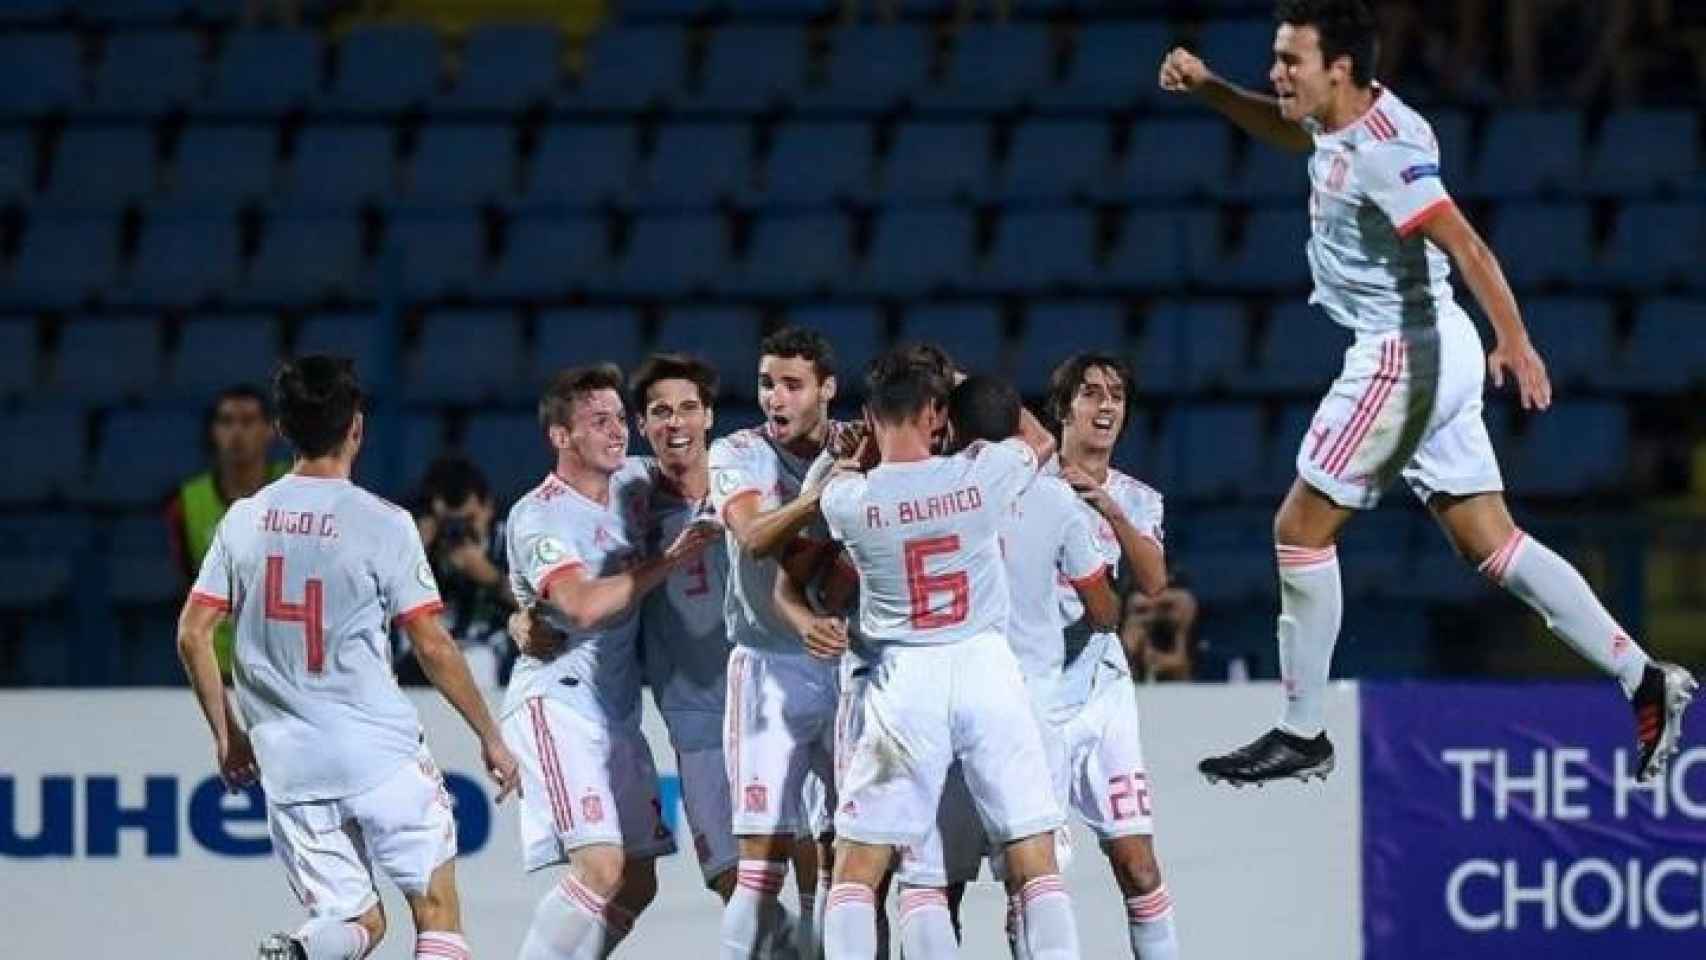 La selección española Sub-19 celebrando el gol de Ferran Torres / Twitter